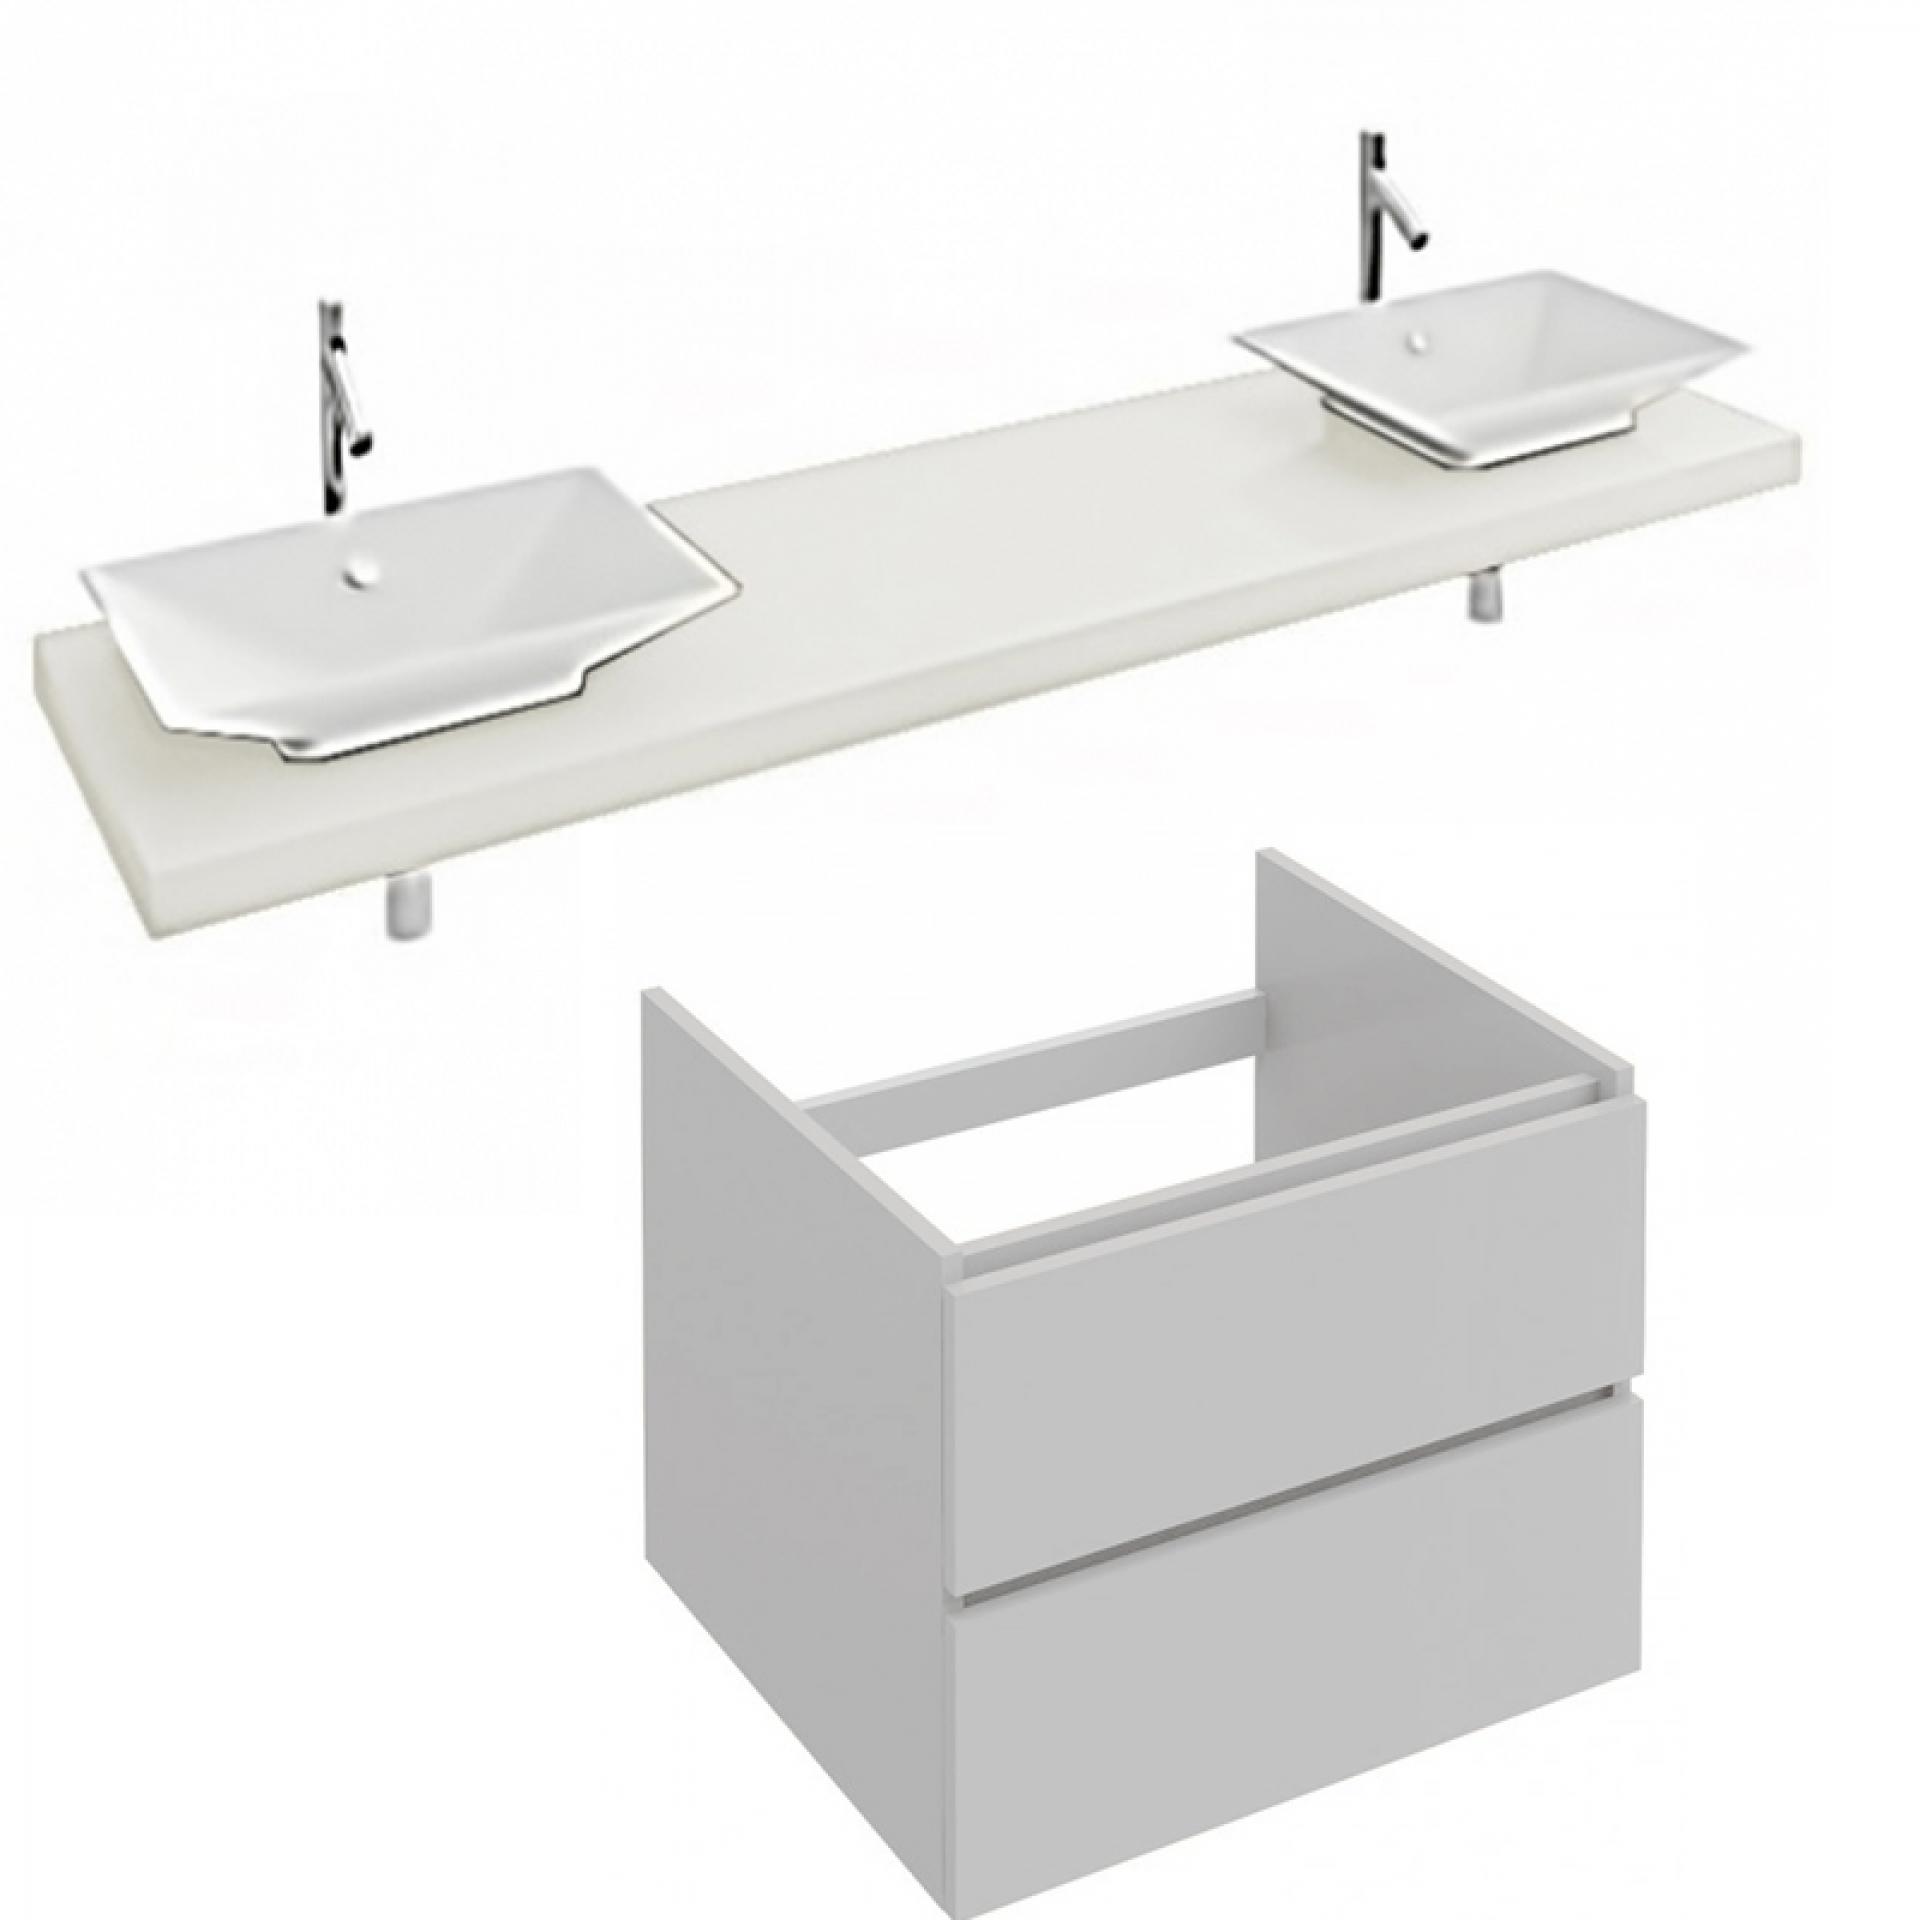 Комплект мебели 200 см Jacob Delafon Parallel с раковиной E4819-00, столешницей EB55-2000-N18, тумбой EB504-N18, белый блестящий